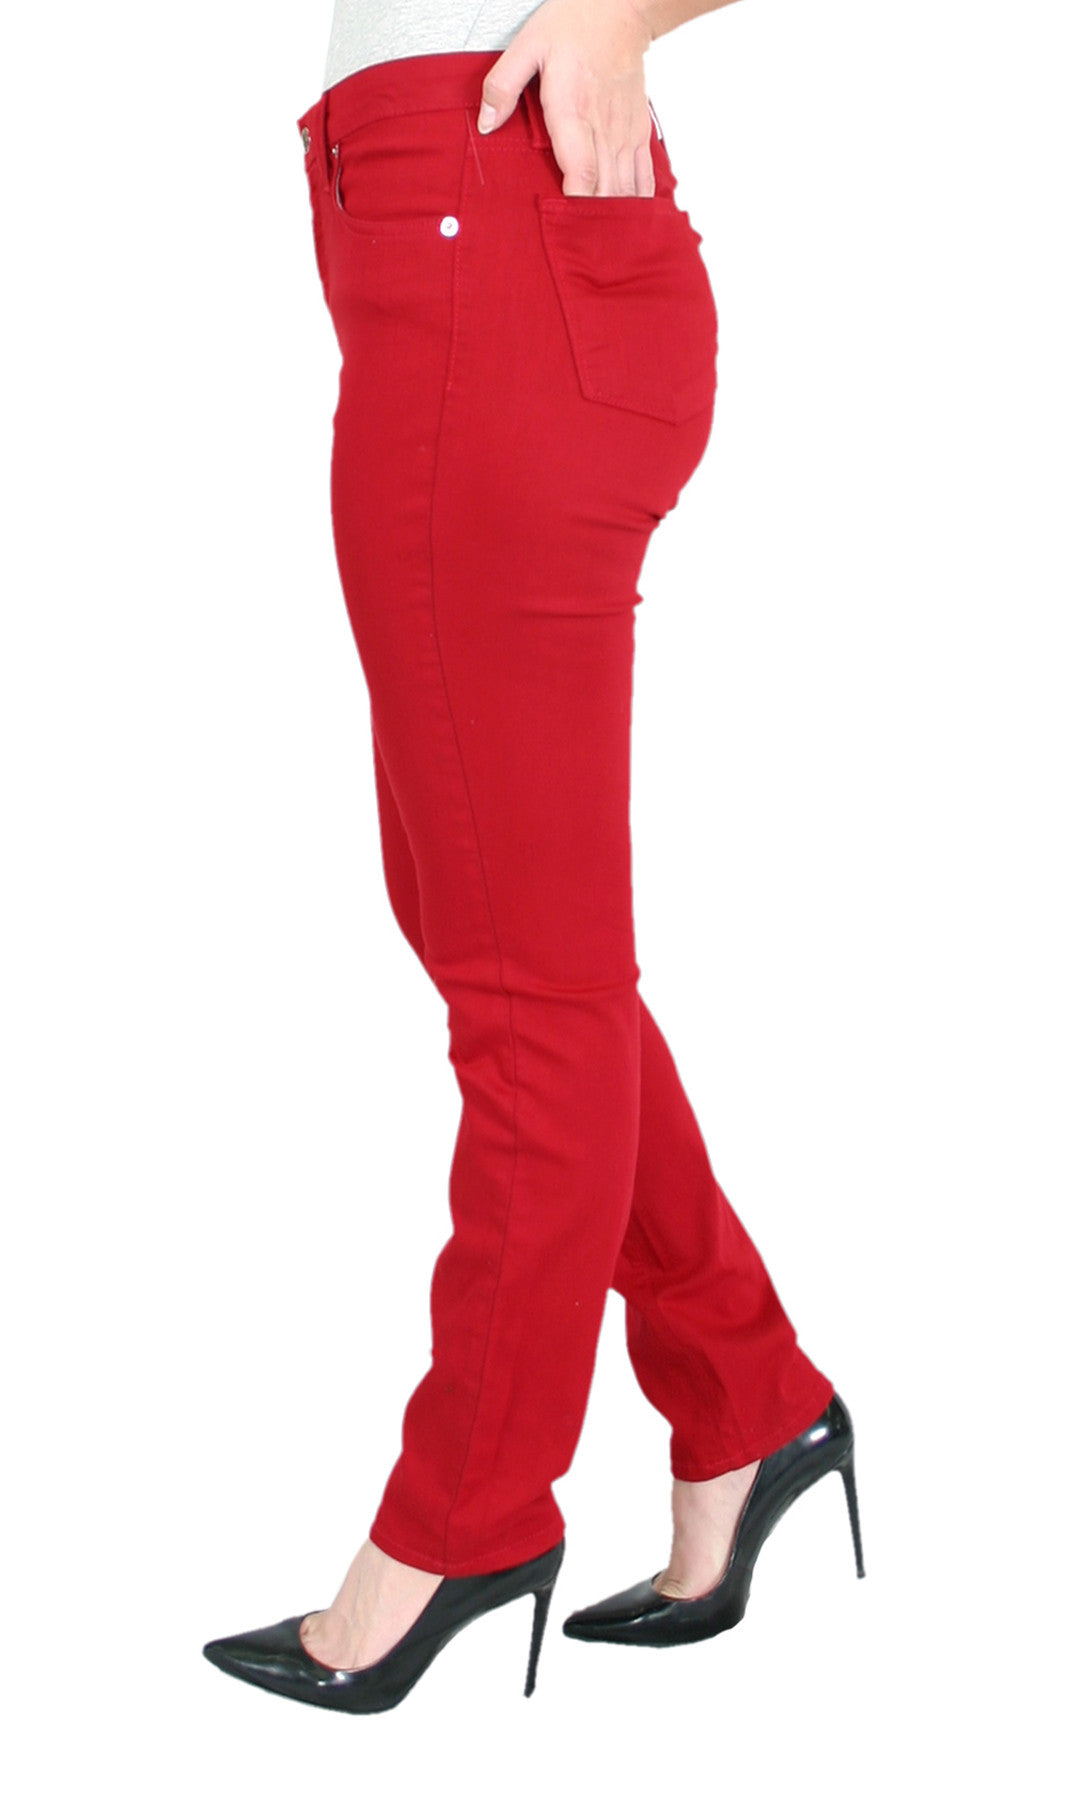 TrueSlim™ Red Jeans – TrueSlim Jeans